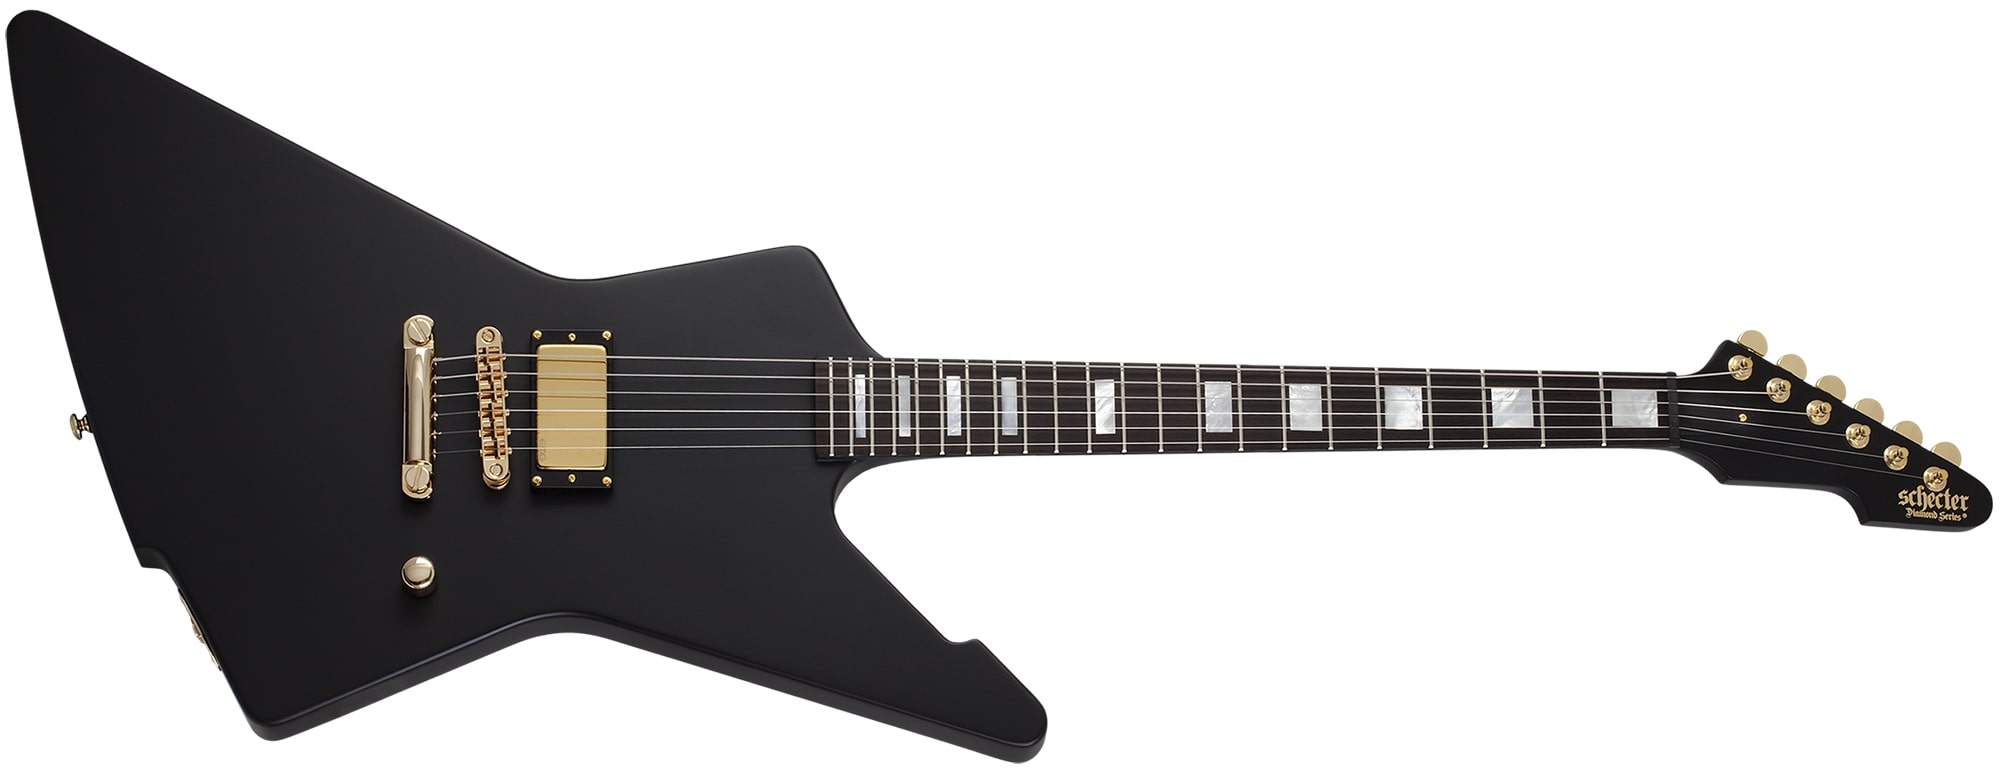 Schecter Cesar Soto E-1 Signature Electric Guitar Satin Black 369-SHC